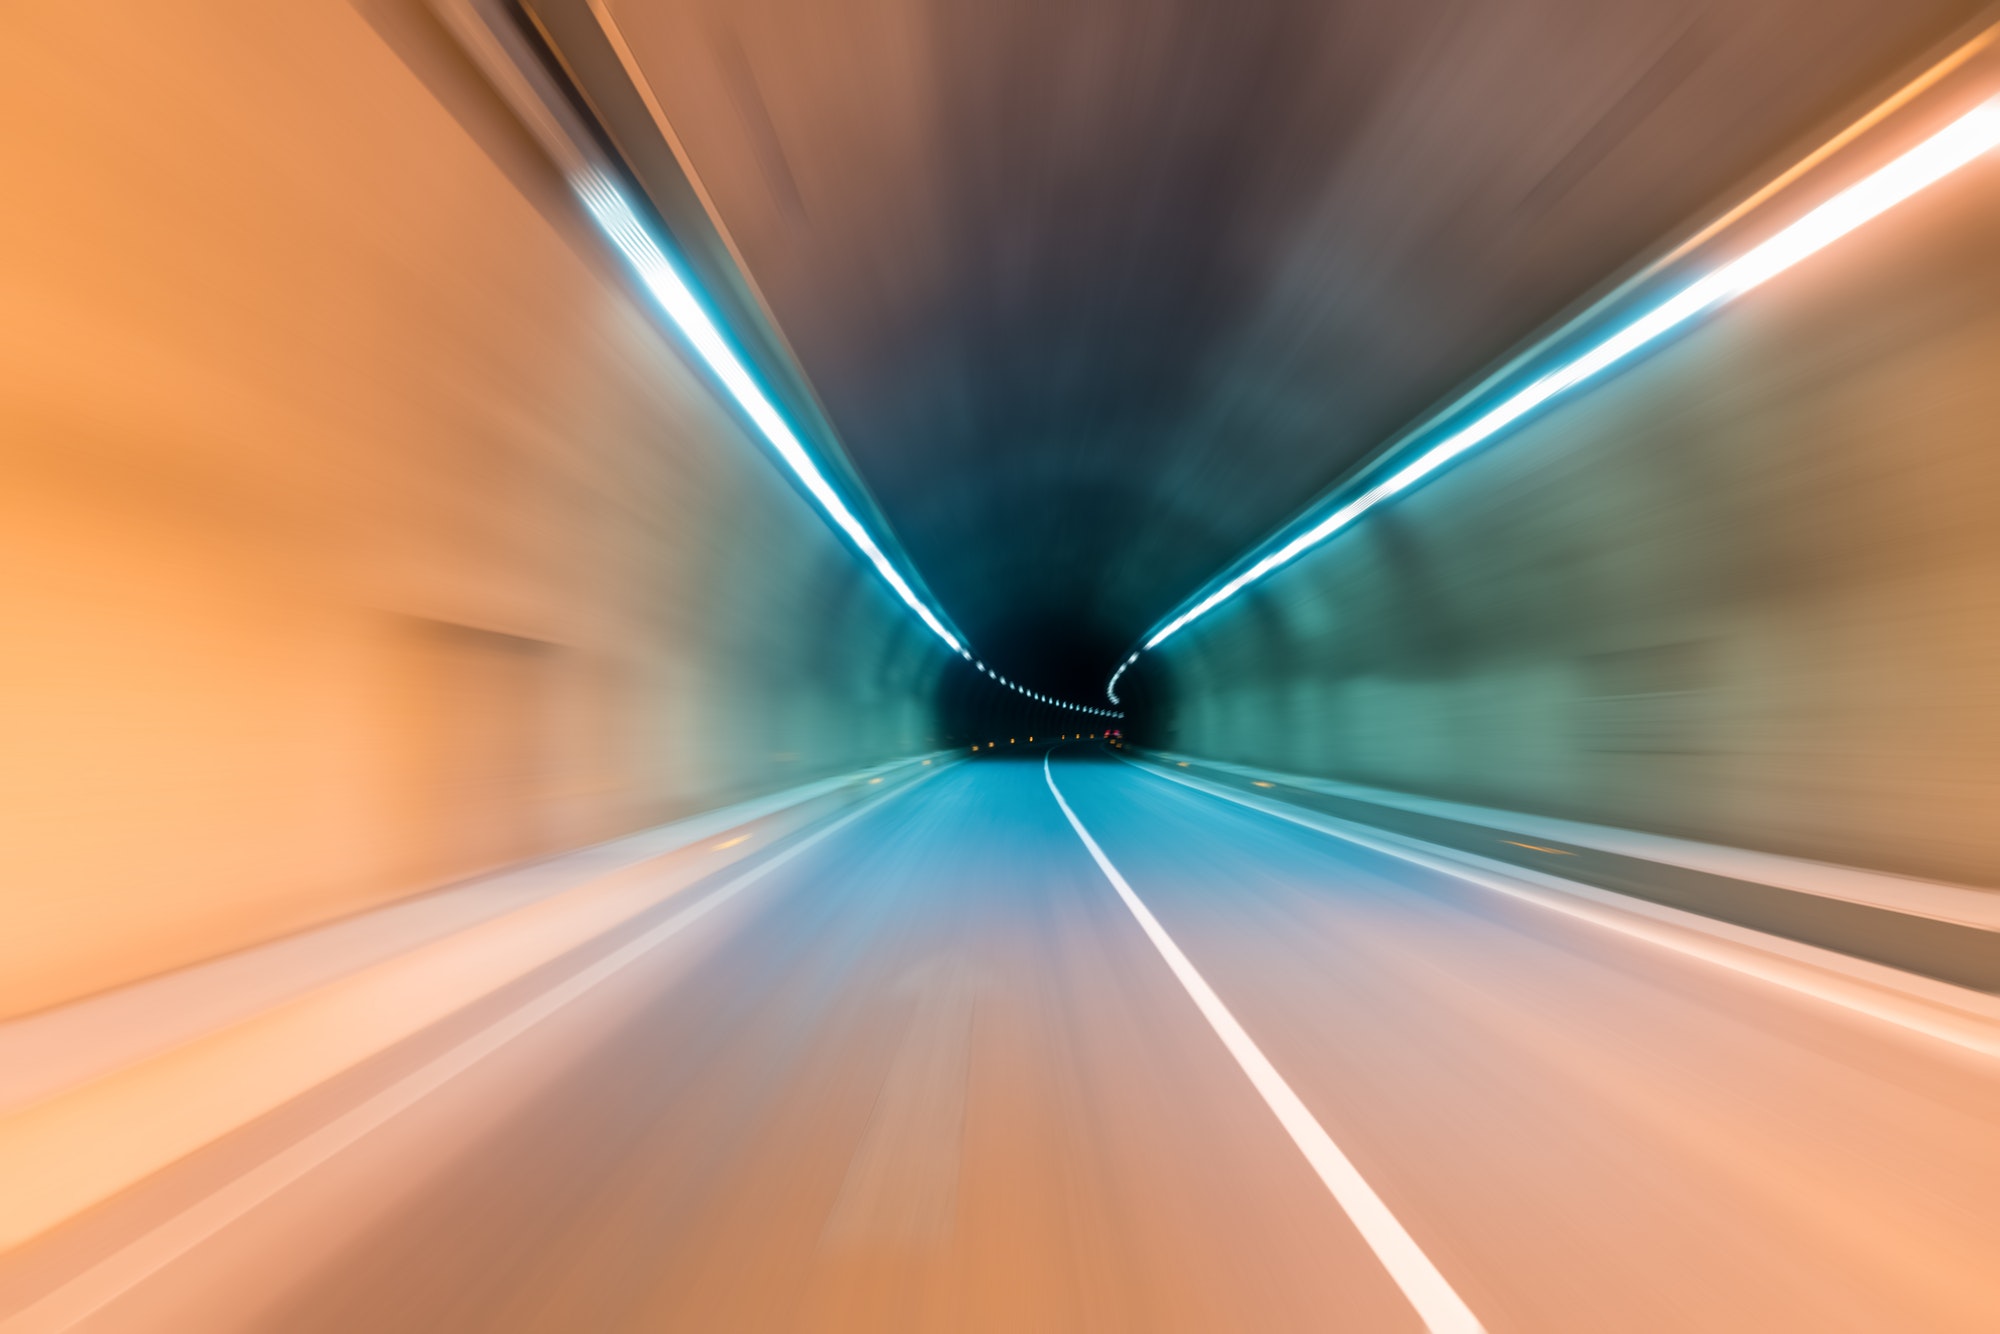 tunnel motion blur